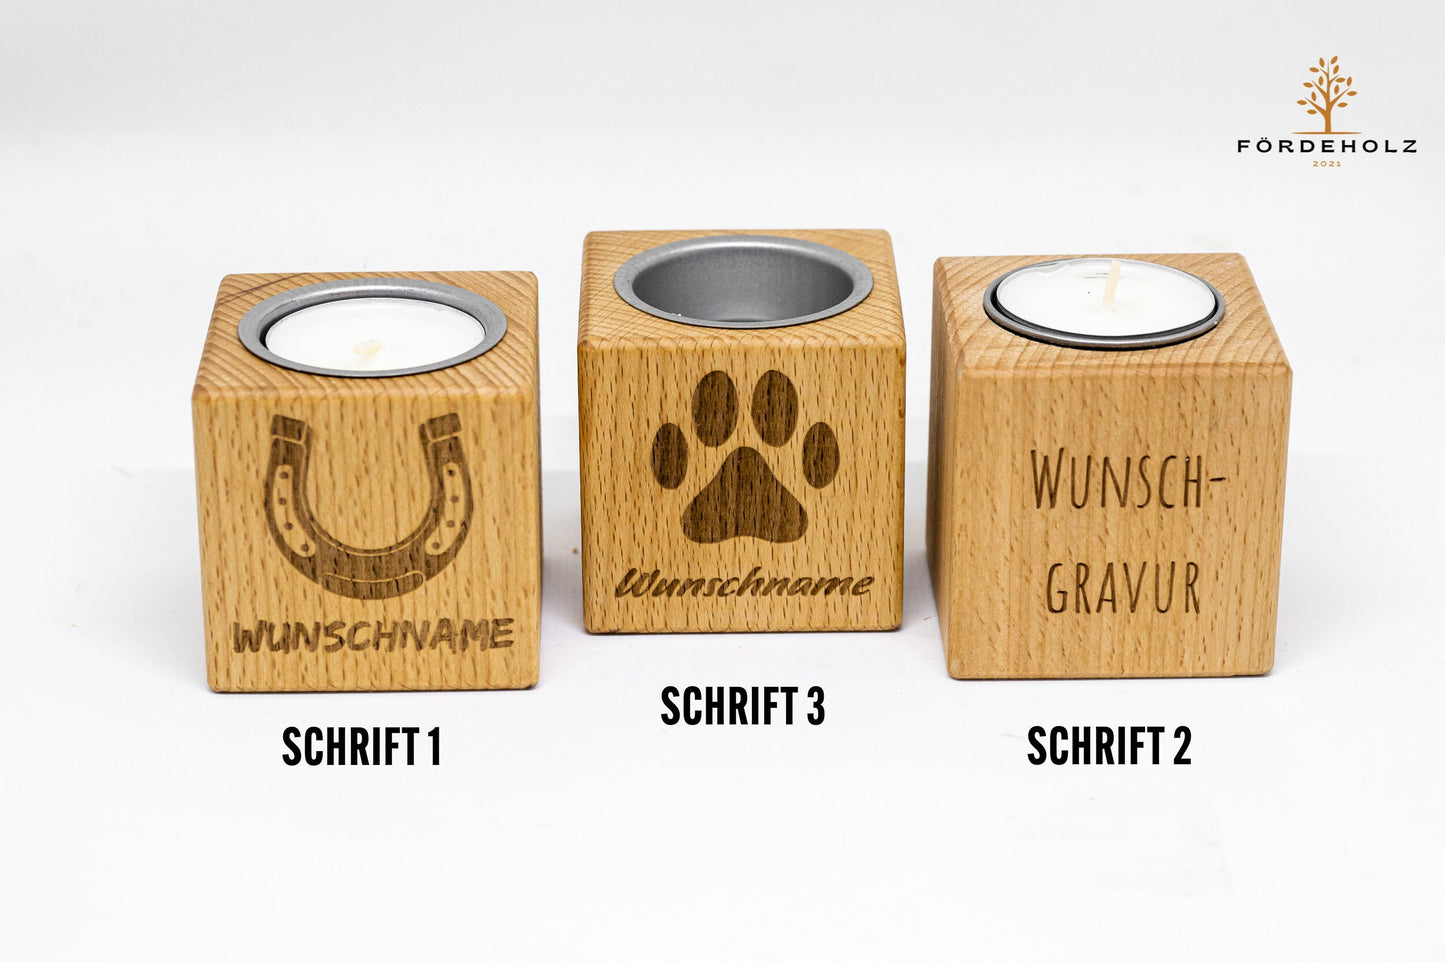 Trauerlicht Pferd - Teelichthalter aus Buchenholz • mit Wunschgravur • Gedenkkerze • Trauerlicht • Windlicht • Teelicht